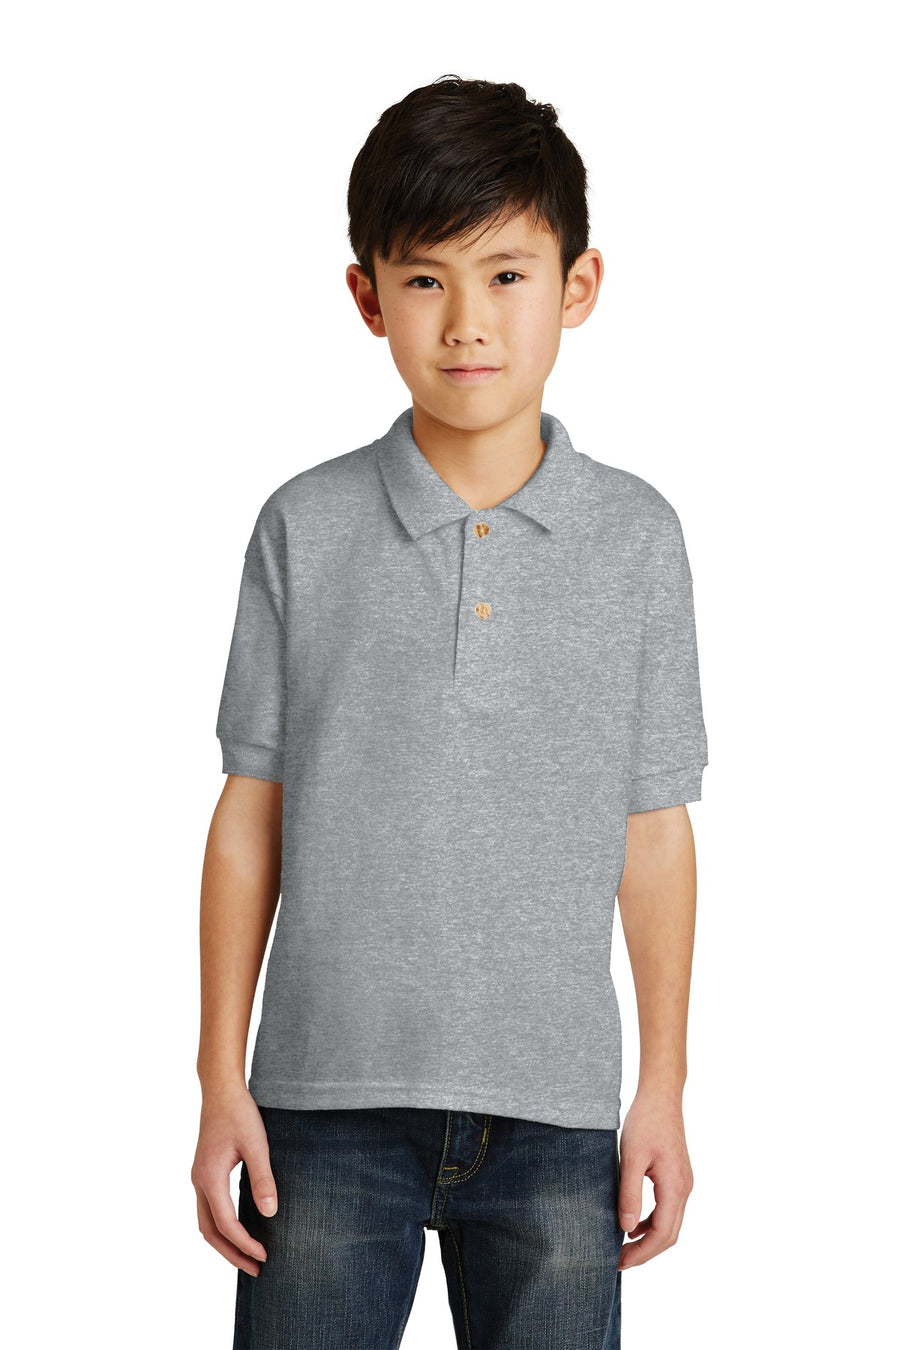 Gildan Youth DryBlend 6-Ounce Jersey Knit Sport Shirt.